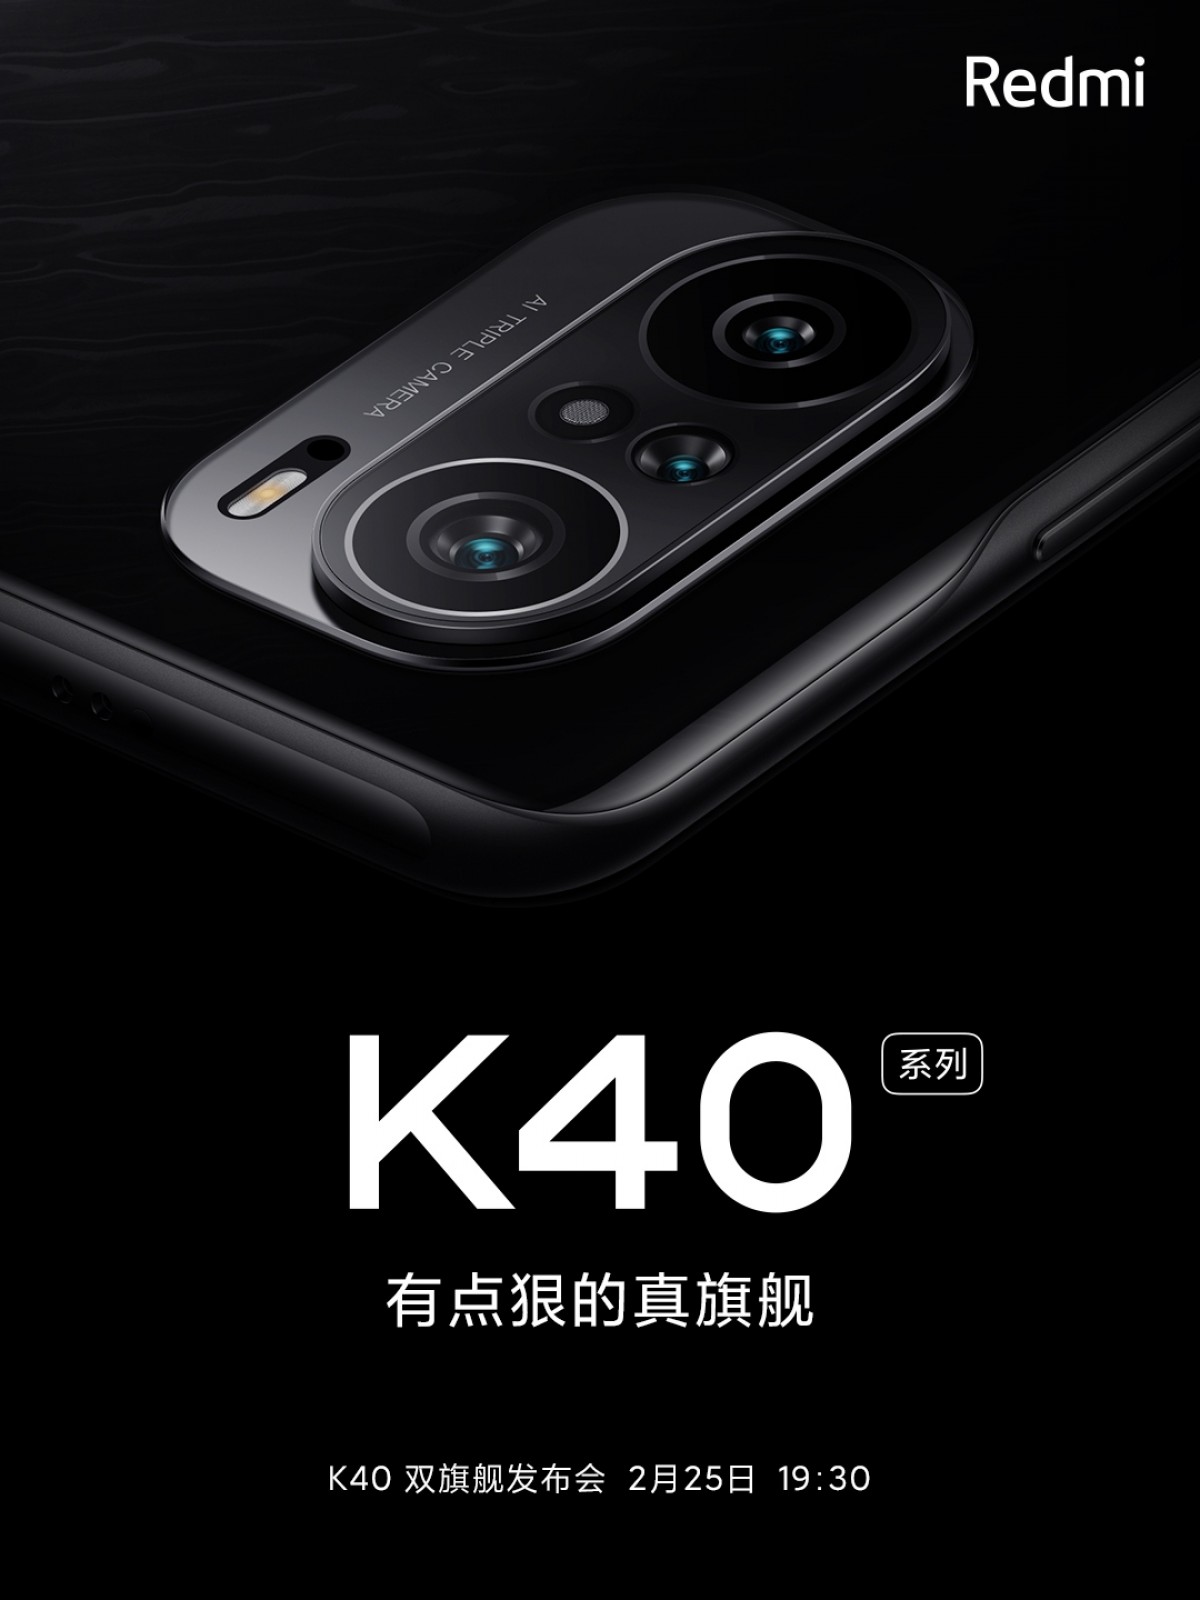 Xiaomi Redmi K40 cartaz